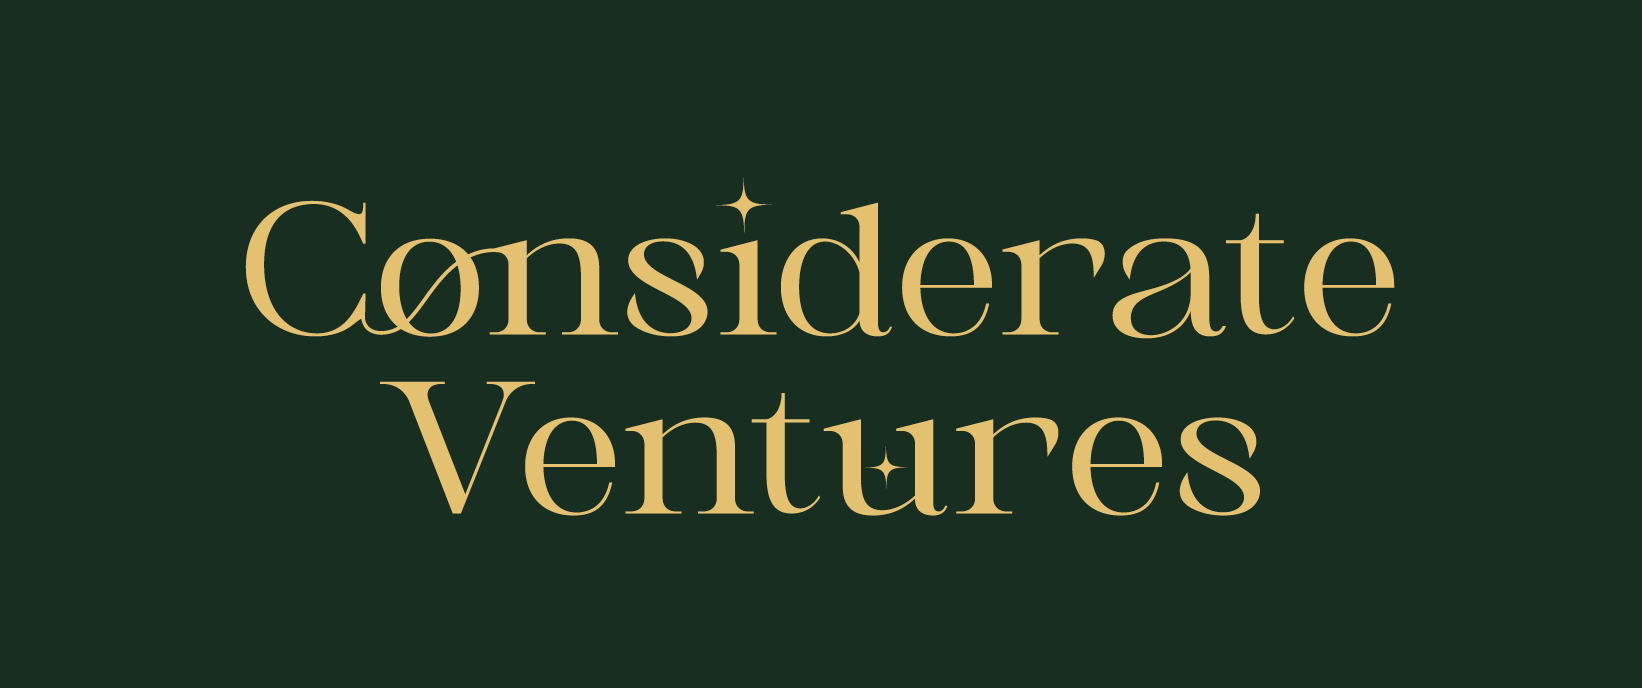 Considerate Ventures Logo Design